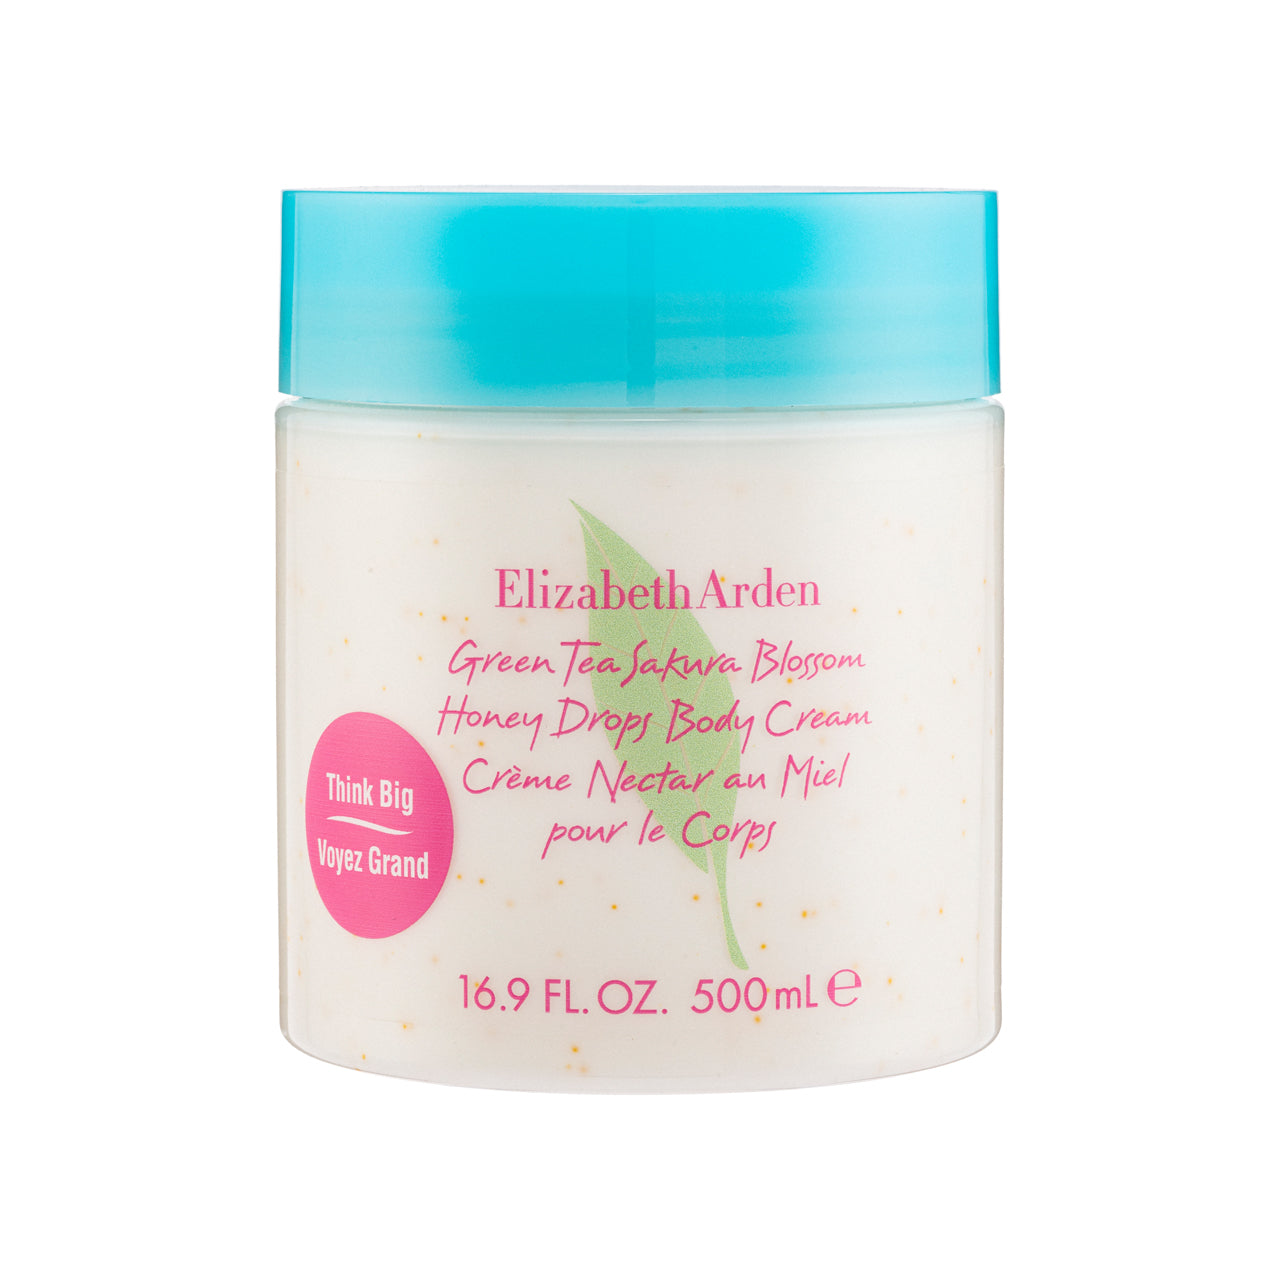 Elizabeth Arden Green Tea Sakura Blossom Body Cream 500ml | Sasa Global eShop